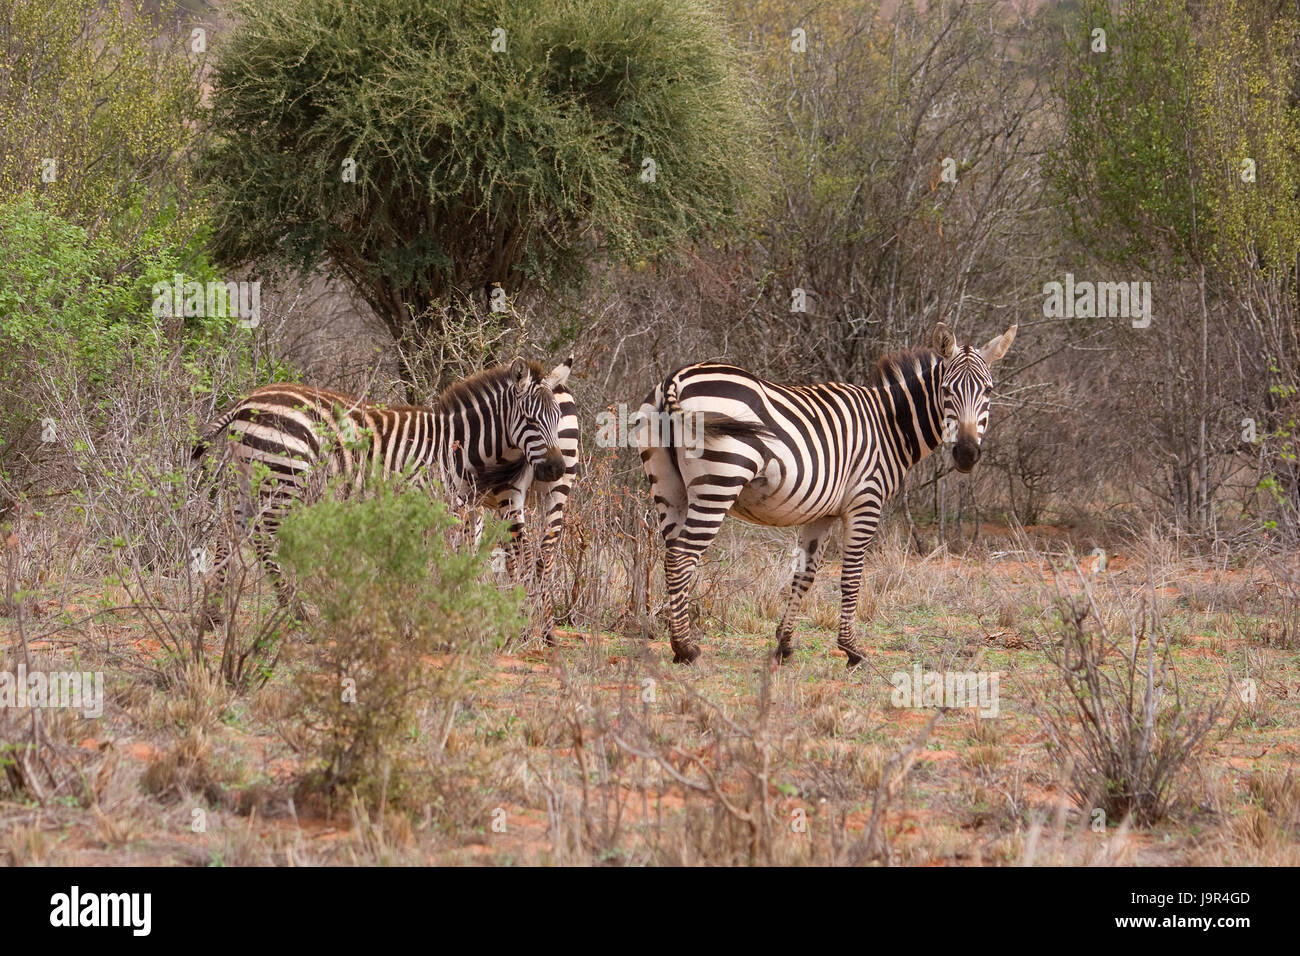 zebras in africa Stock Photo